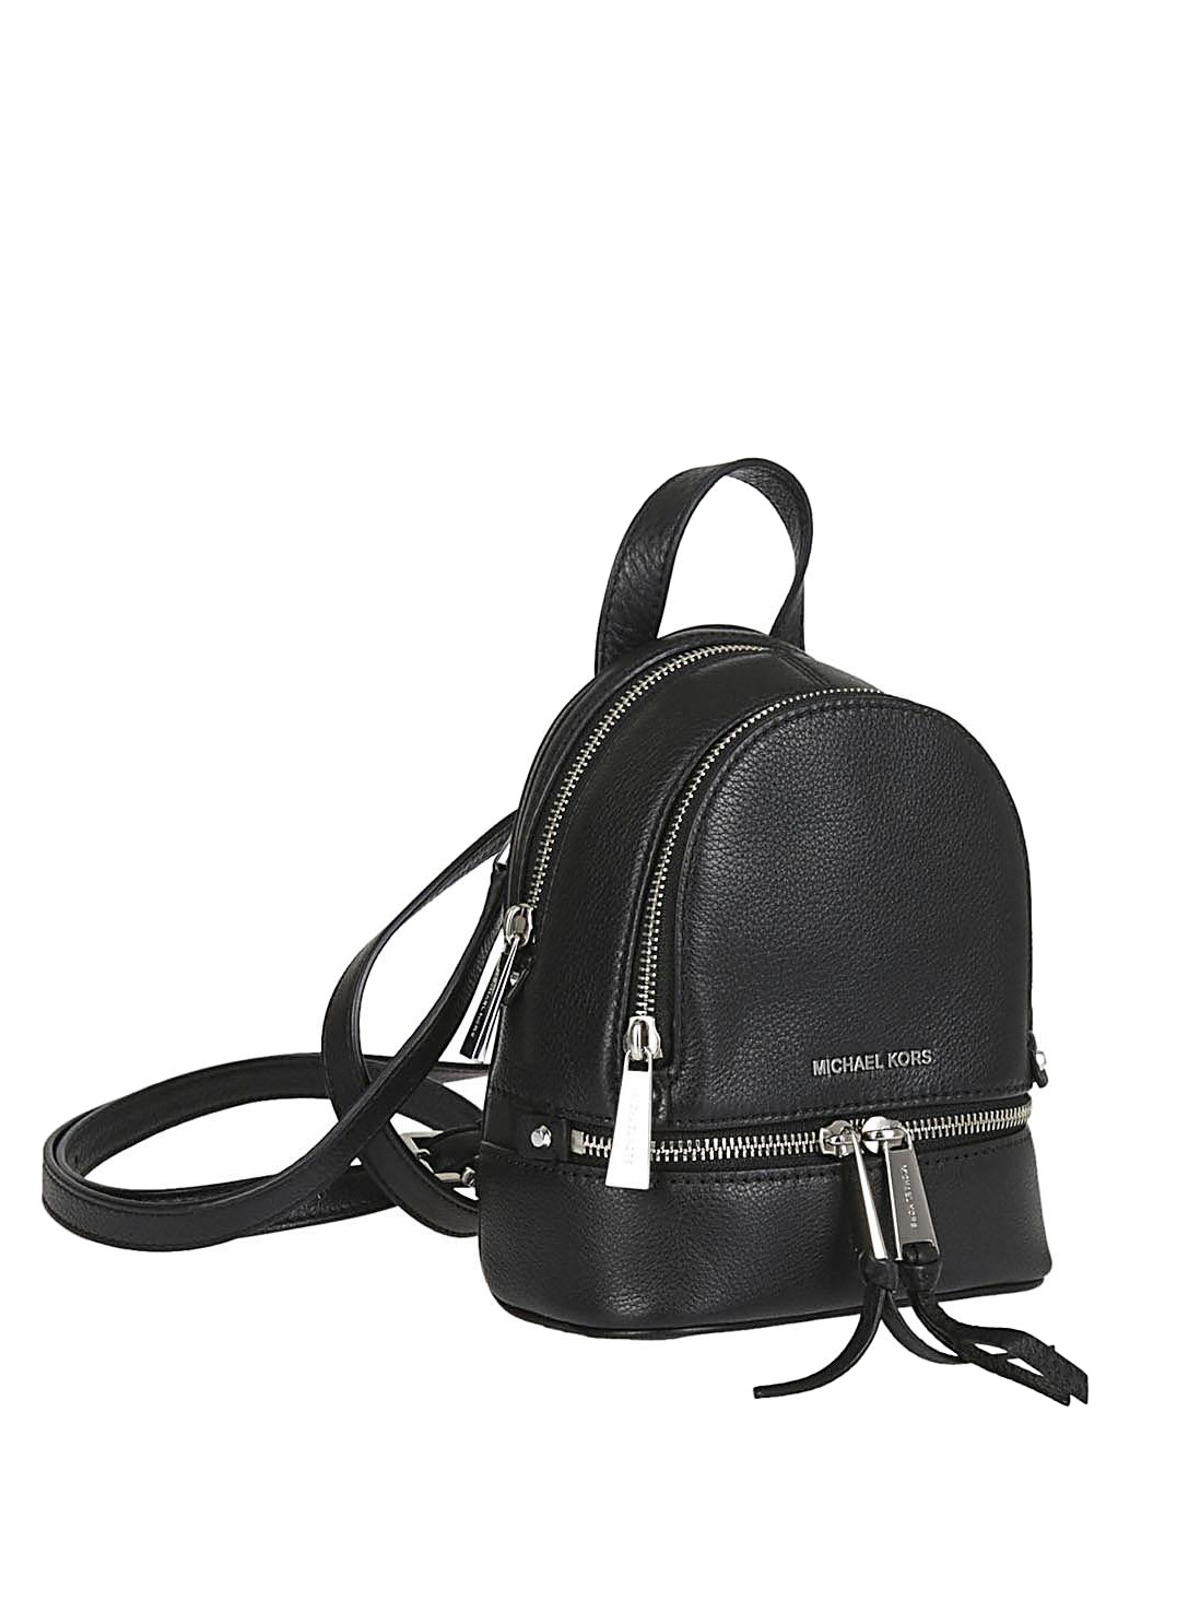 Michael Kors - Rhea Mini black leather backpack - کوله پشتی ...